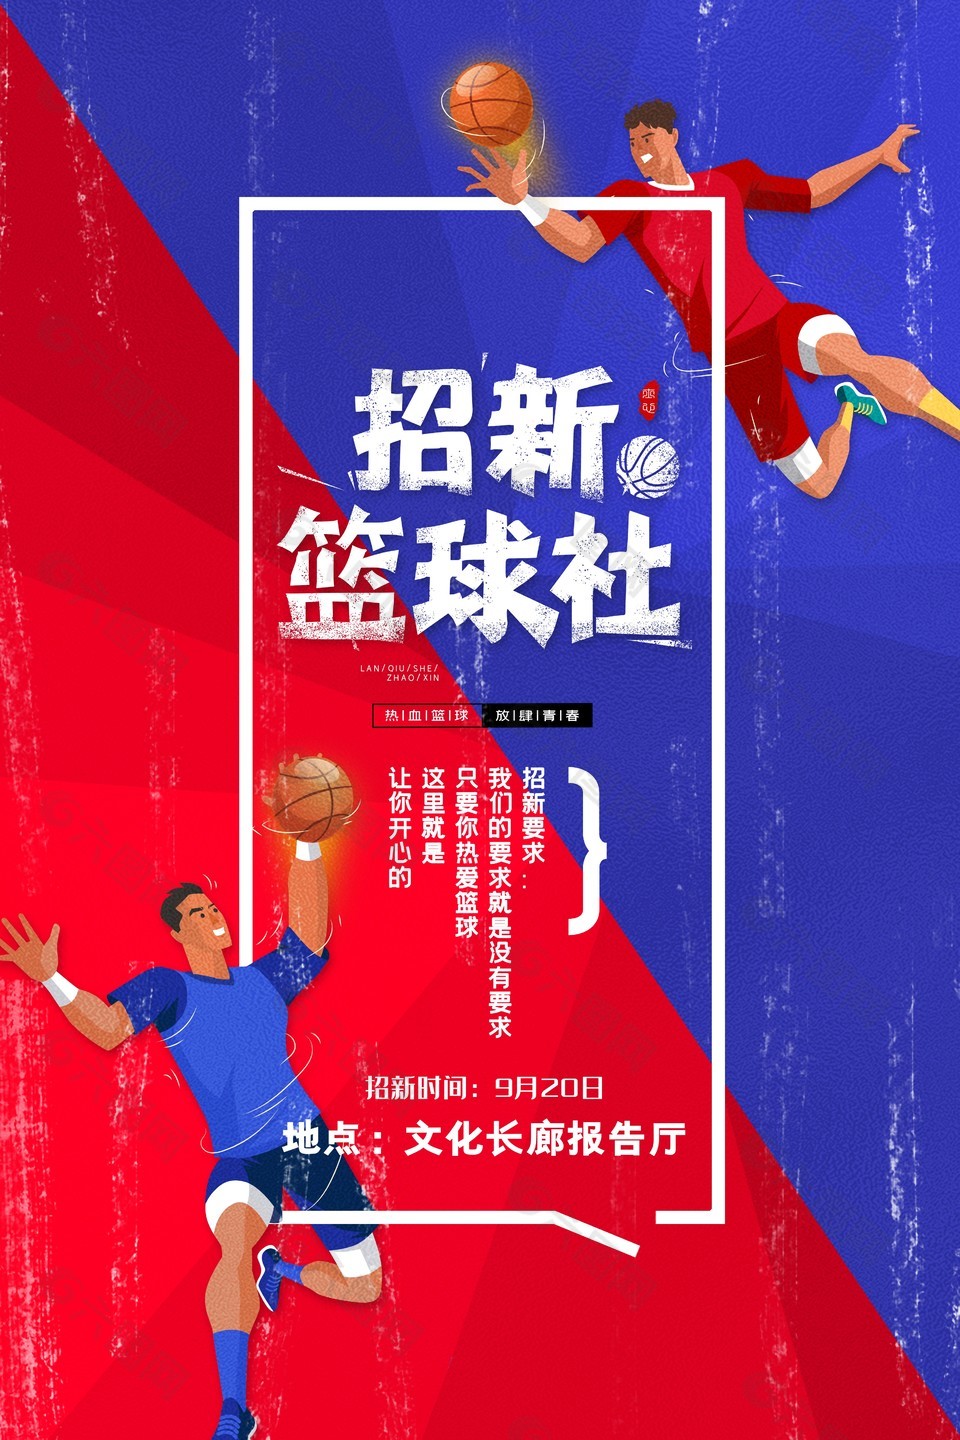 篮球社团招新创意人物插画海报素材